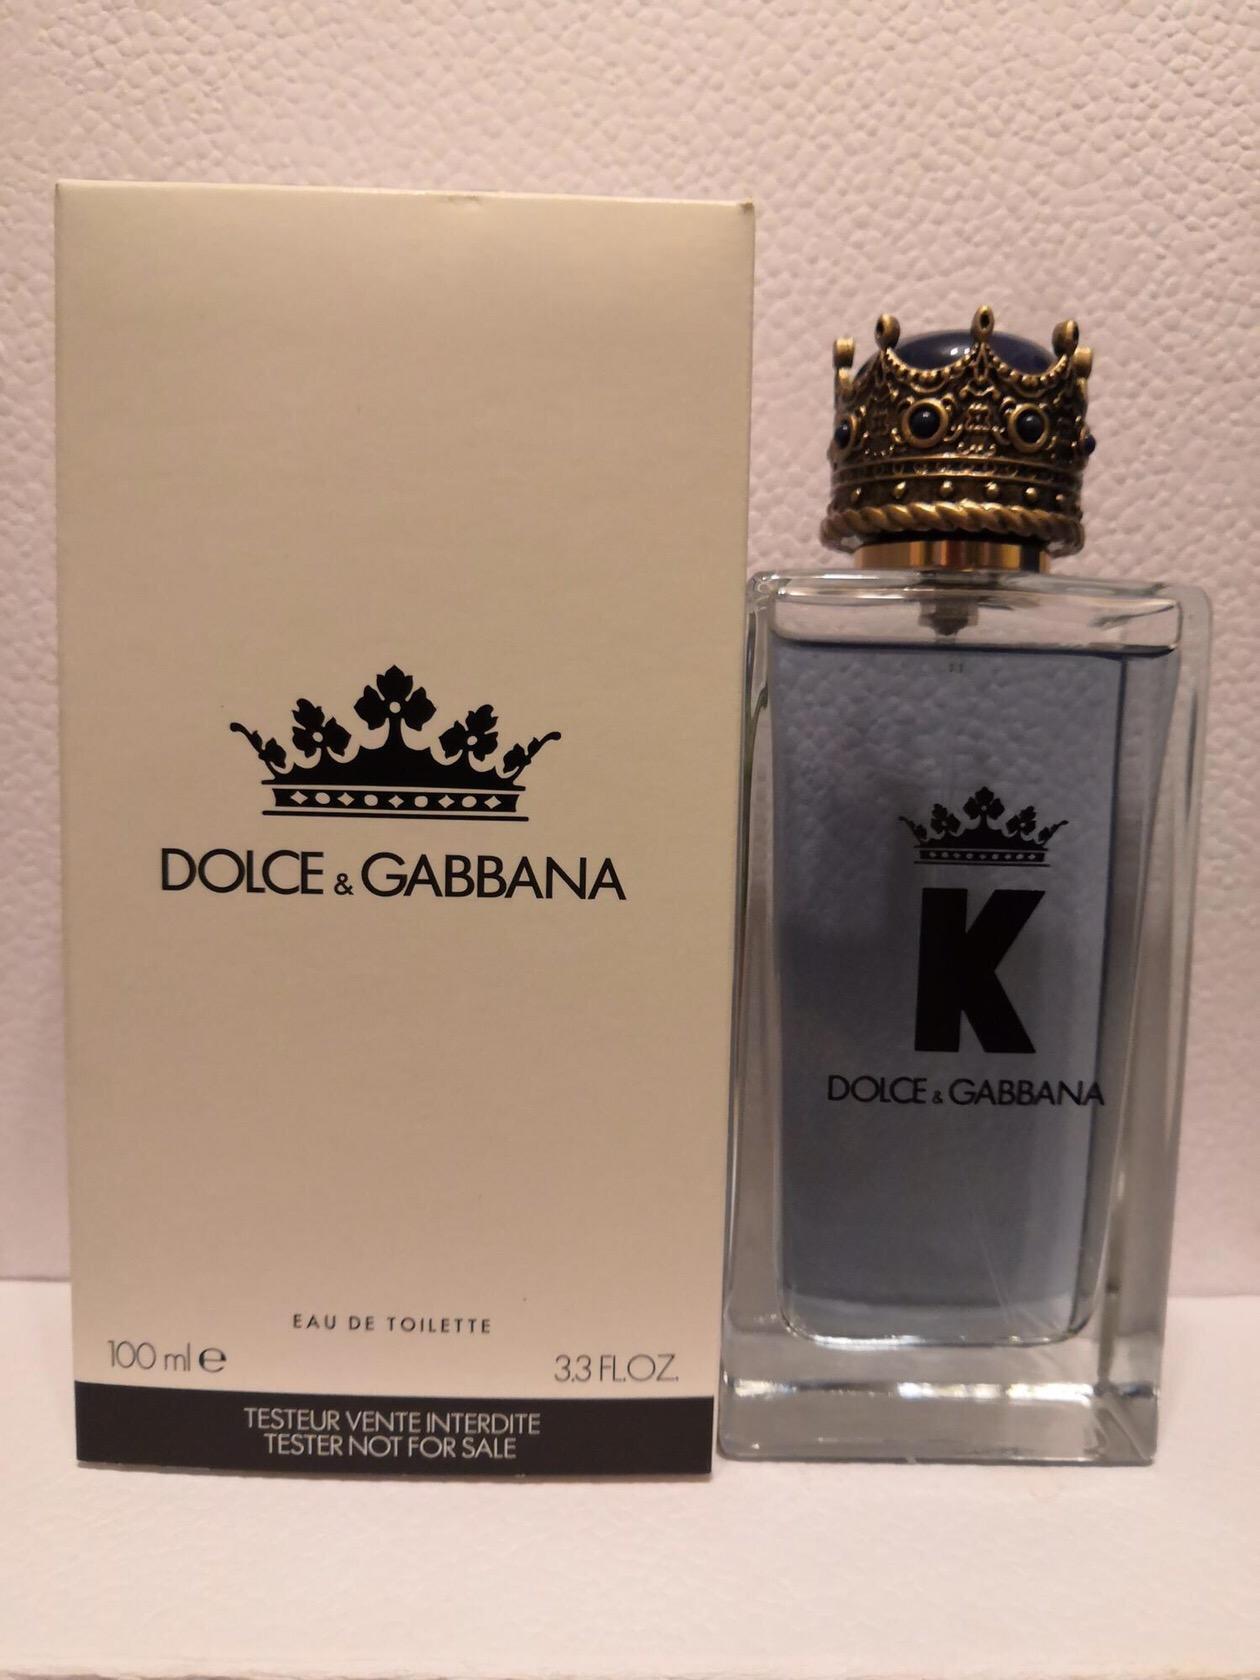 K by dolce gabbana. Dolce Gabbana k King 100ml EDT. Dolce Gabbana King 100ml. Dolce Gabbana k тестер. Dolce Gabbana King Парфюм.